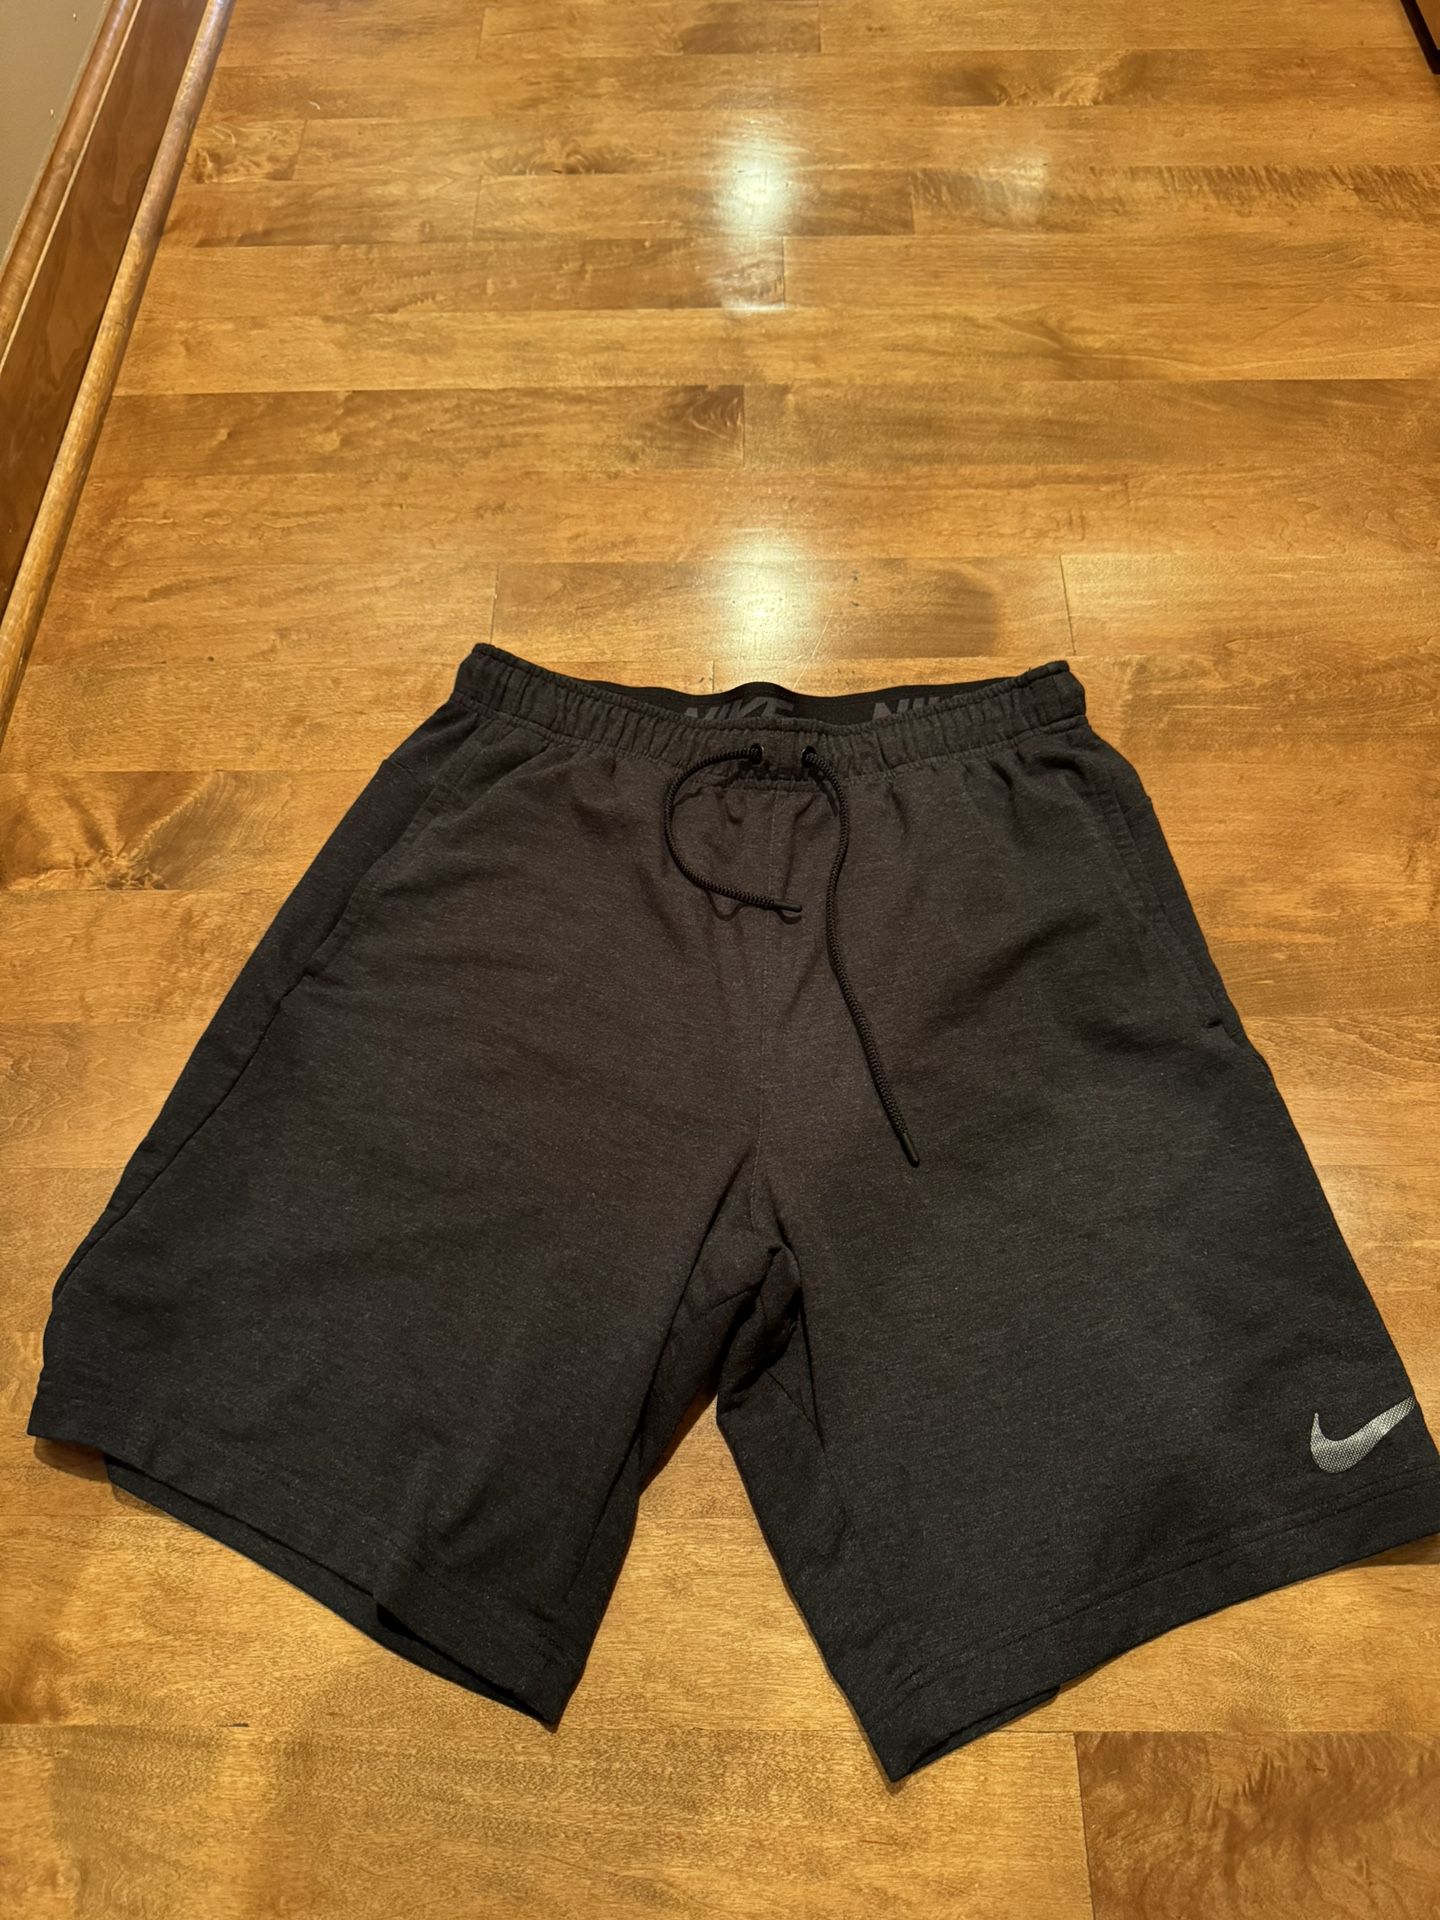 Men’s Nike Dri Fit Shorts Shipping Available 